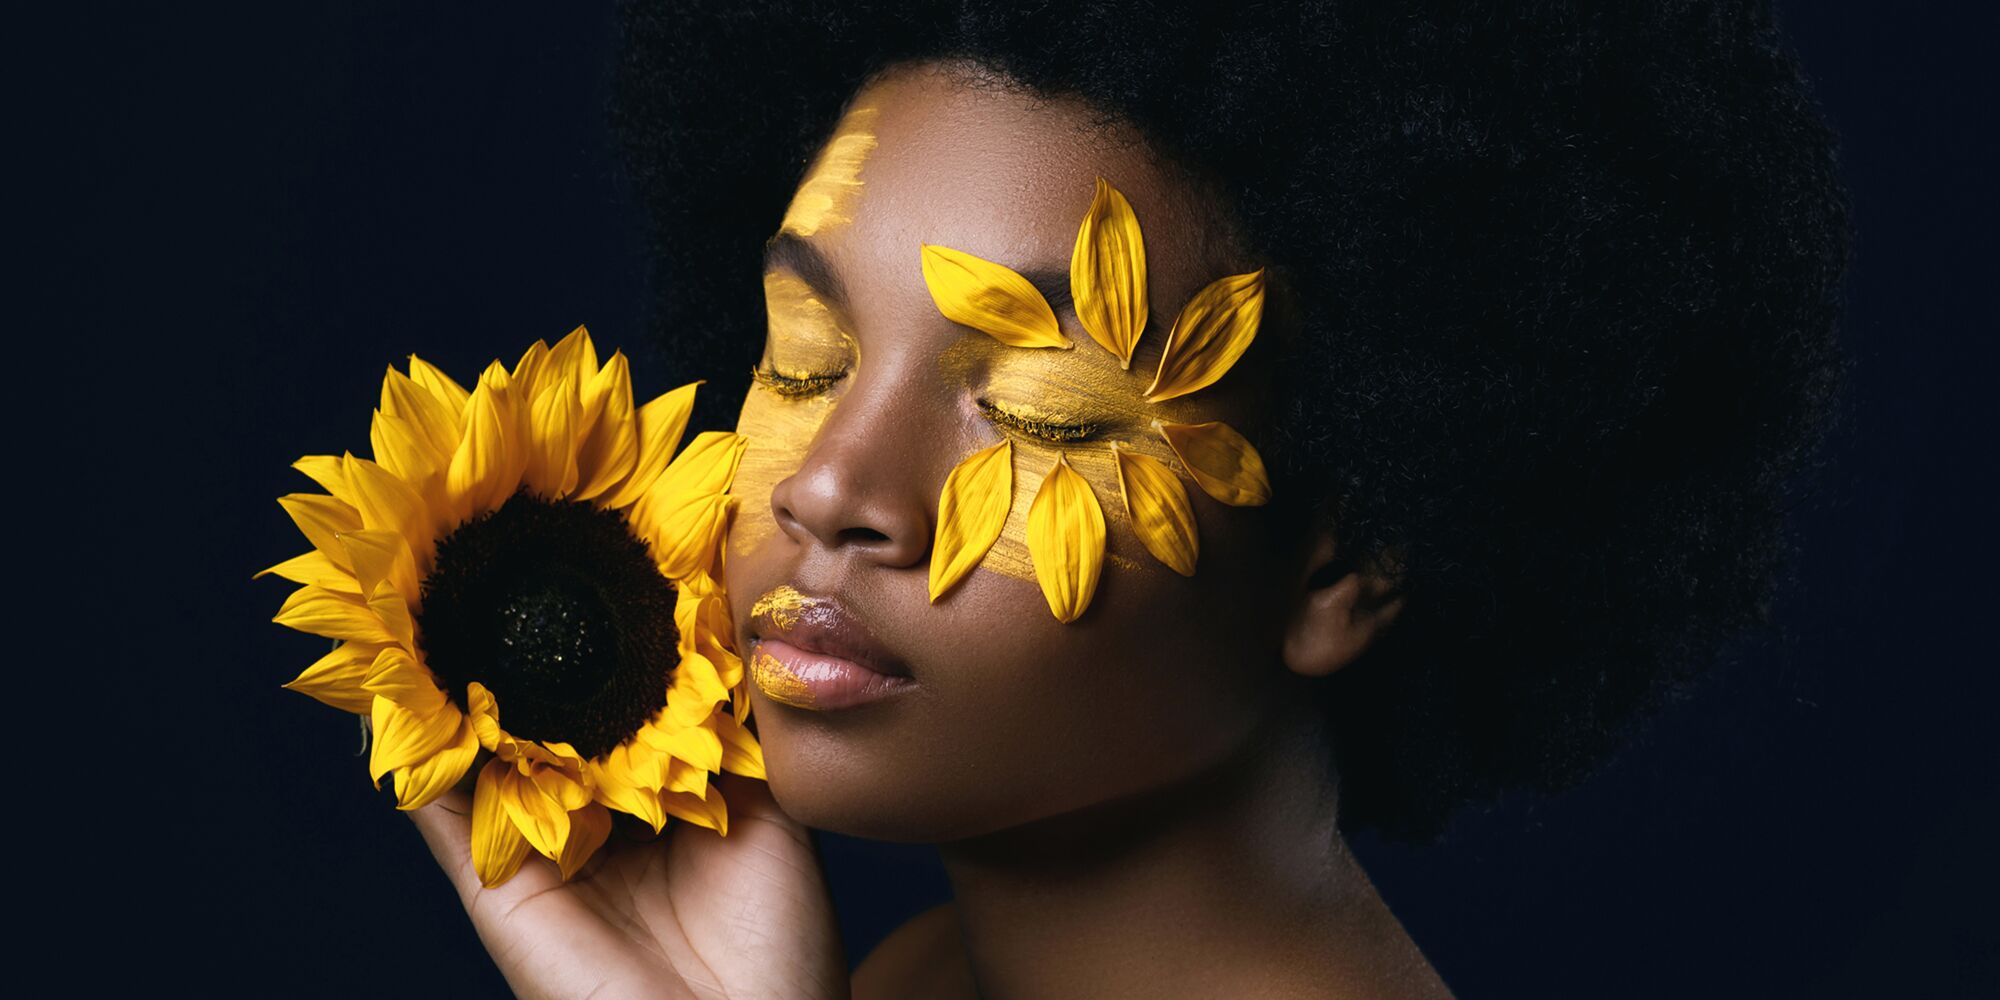 Hier sieht man eine Schwarze Frau, die die Augen zu hat und sich eine Sonnenblume neben ihr Gesicht hält. Ihre Augen sind gelb angemalt, um eines herum sind Sonnenblumenblüten.